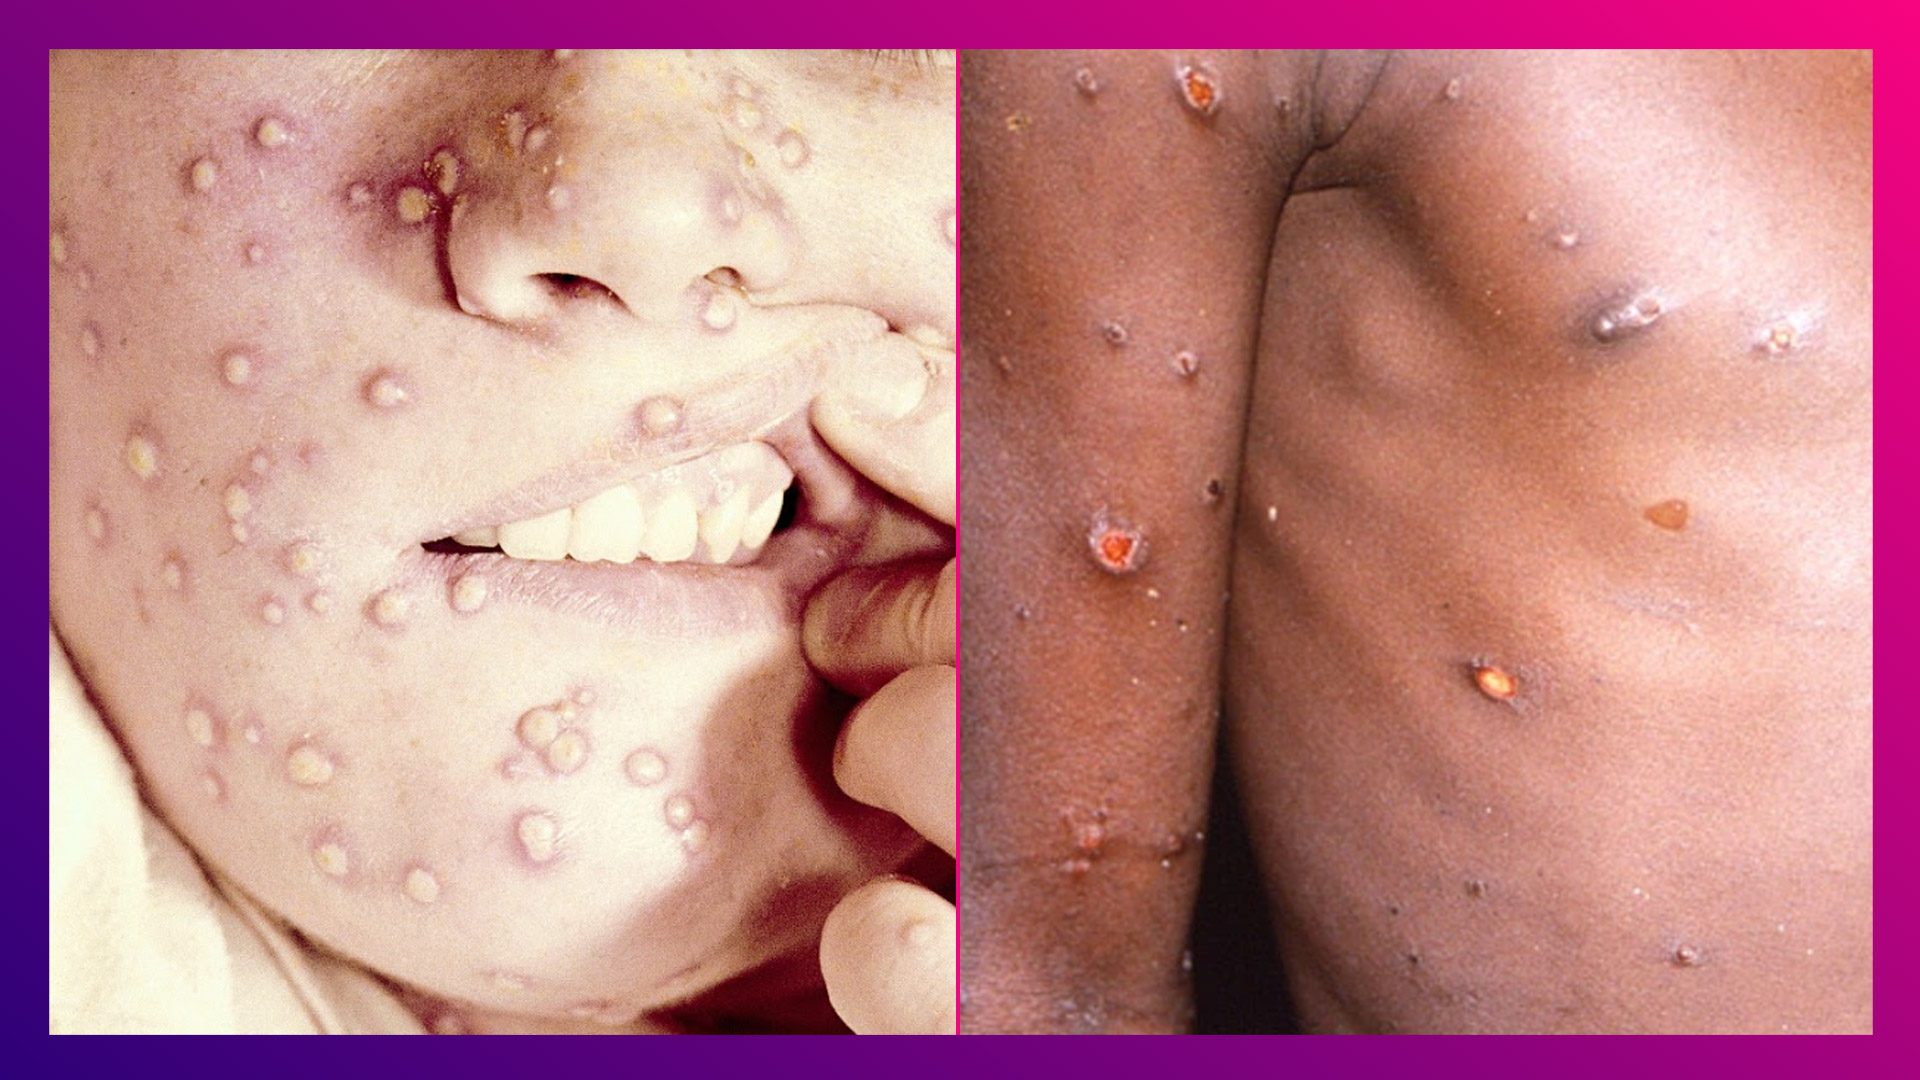 Monkeypox VS Smallpox: মাঙ্কিপক্স না স্মলপক্স? ভয়াবহতা বেশি কীসে, চিকিৎসকরা কী বলছেন দেখুন